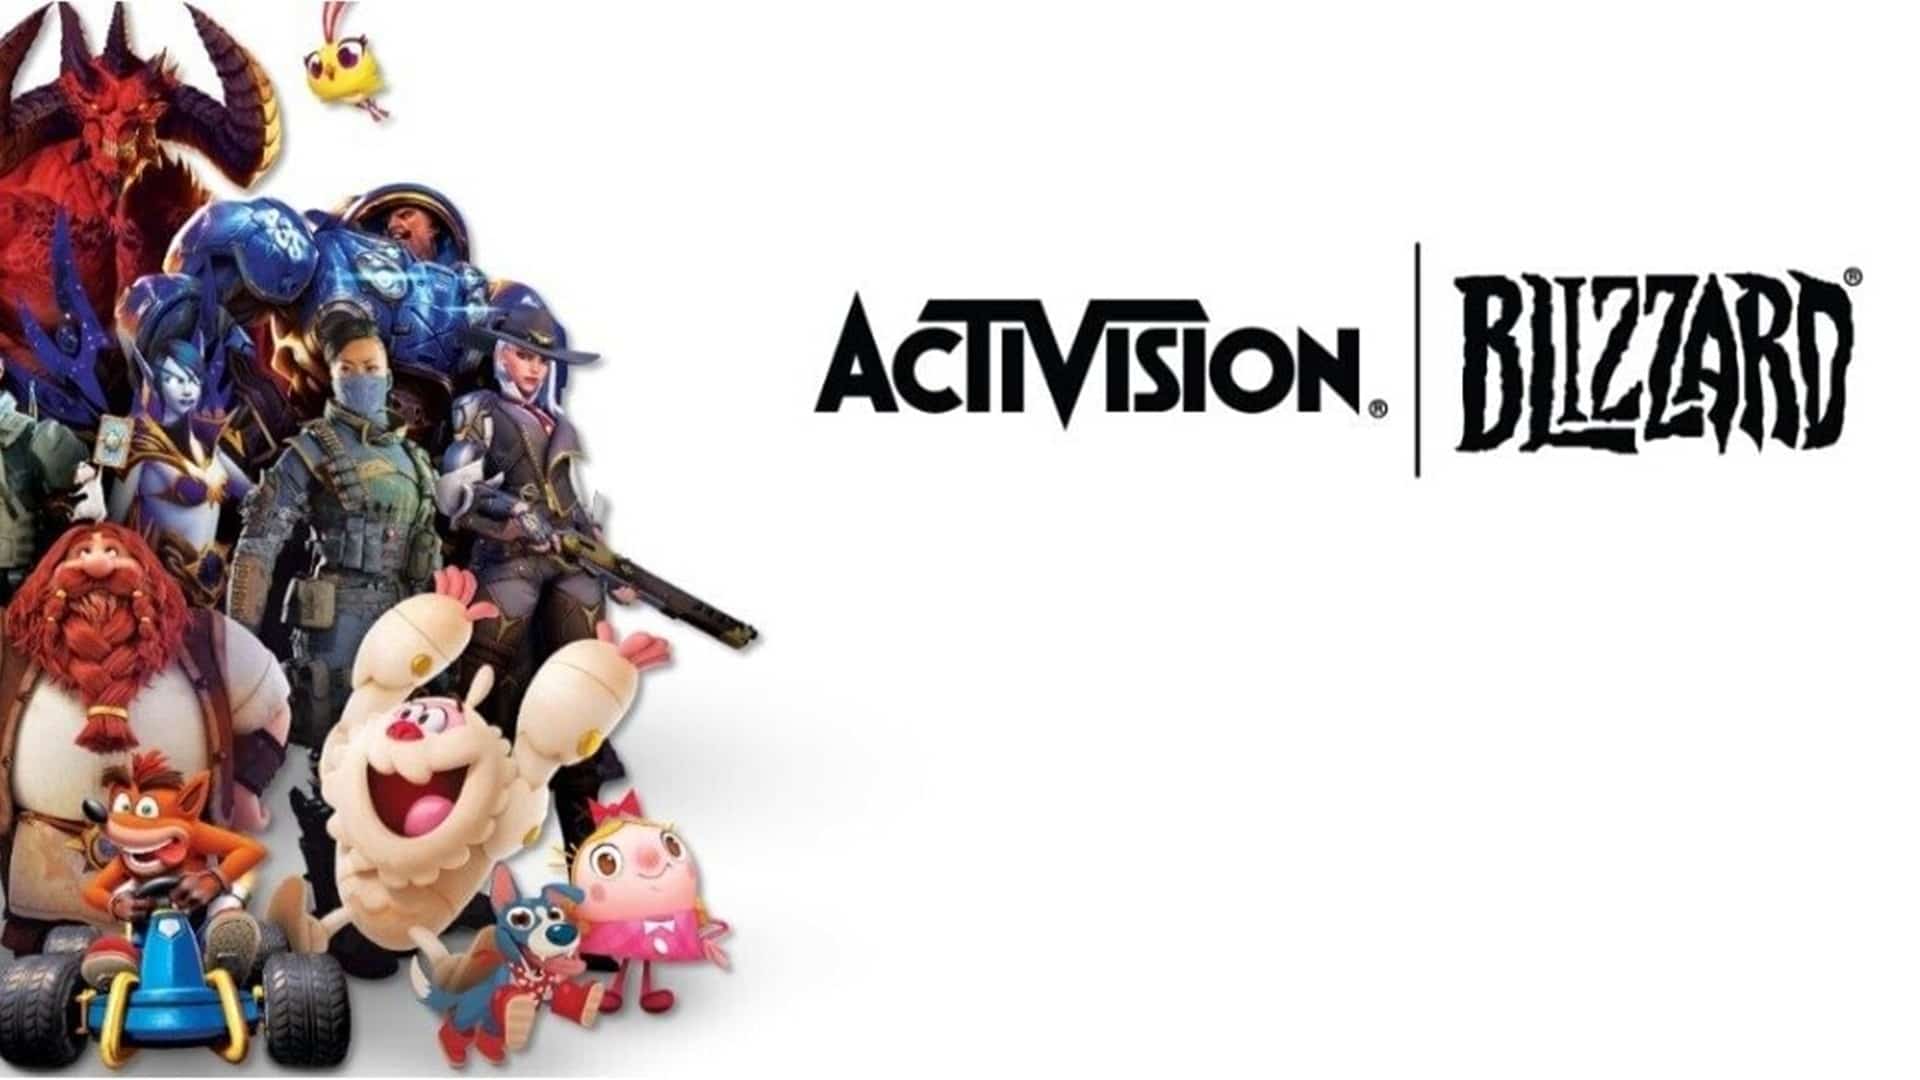 Activision es acusada de amenazar ilegalmente al personal durante los esfuerzos de sindicalización, GamersRD